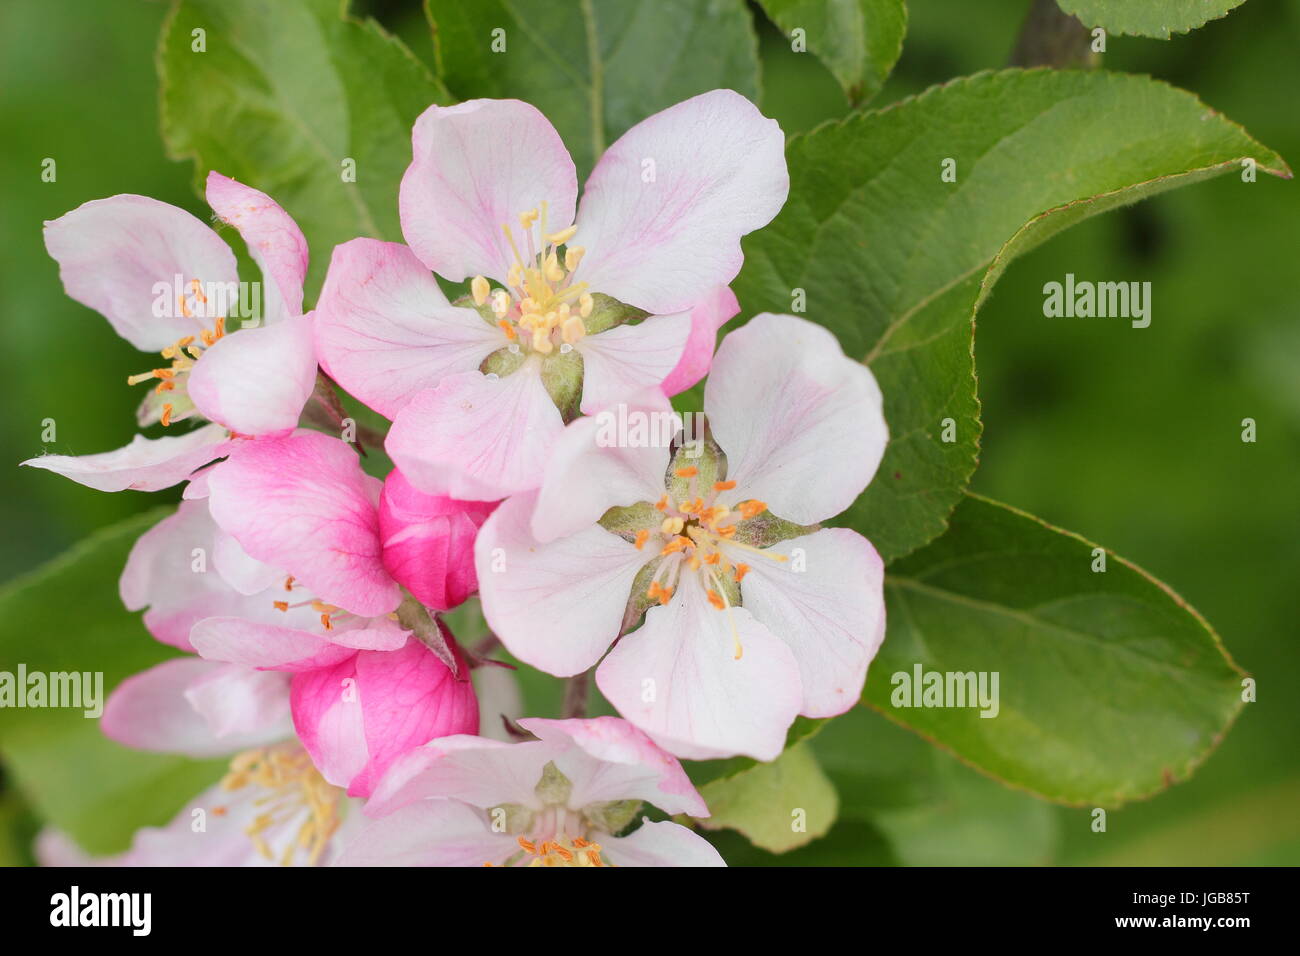 Malus domestica 'Fillingham Pippin', Apple Blossom en plena floración en inglés un huerto en el principio del verano (mayo), REINO UNIDO Foto de stock